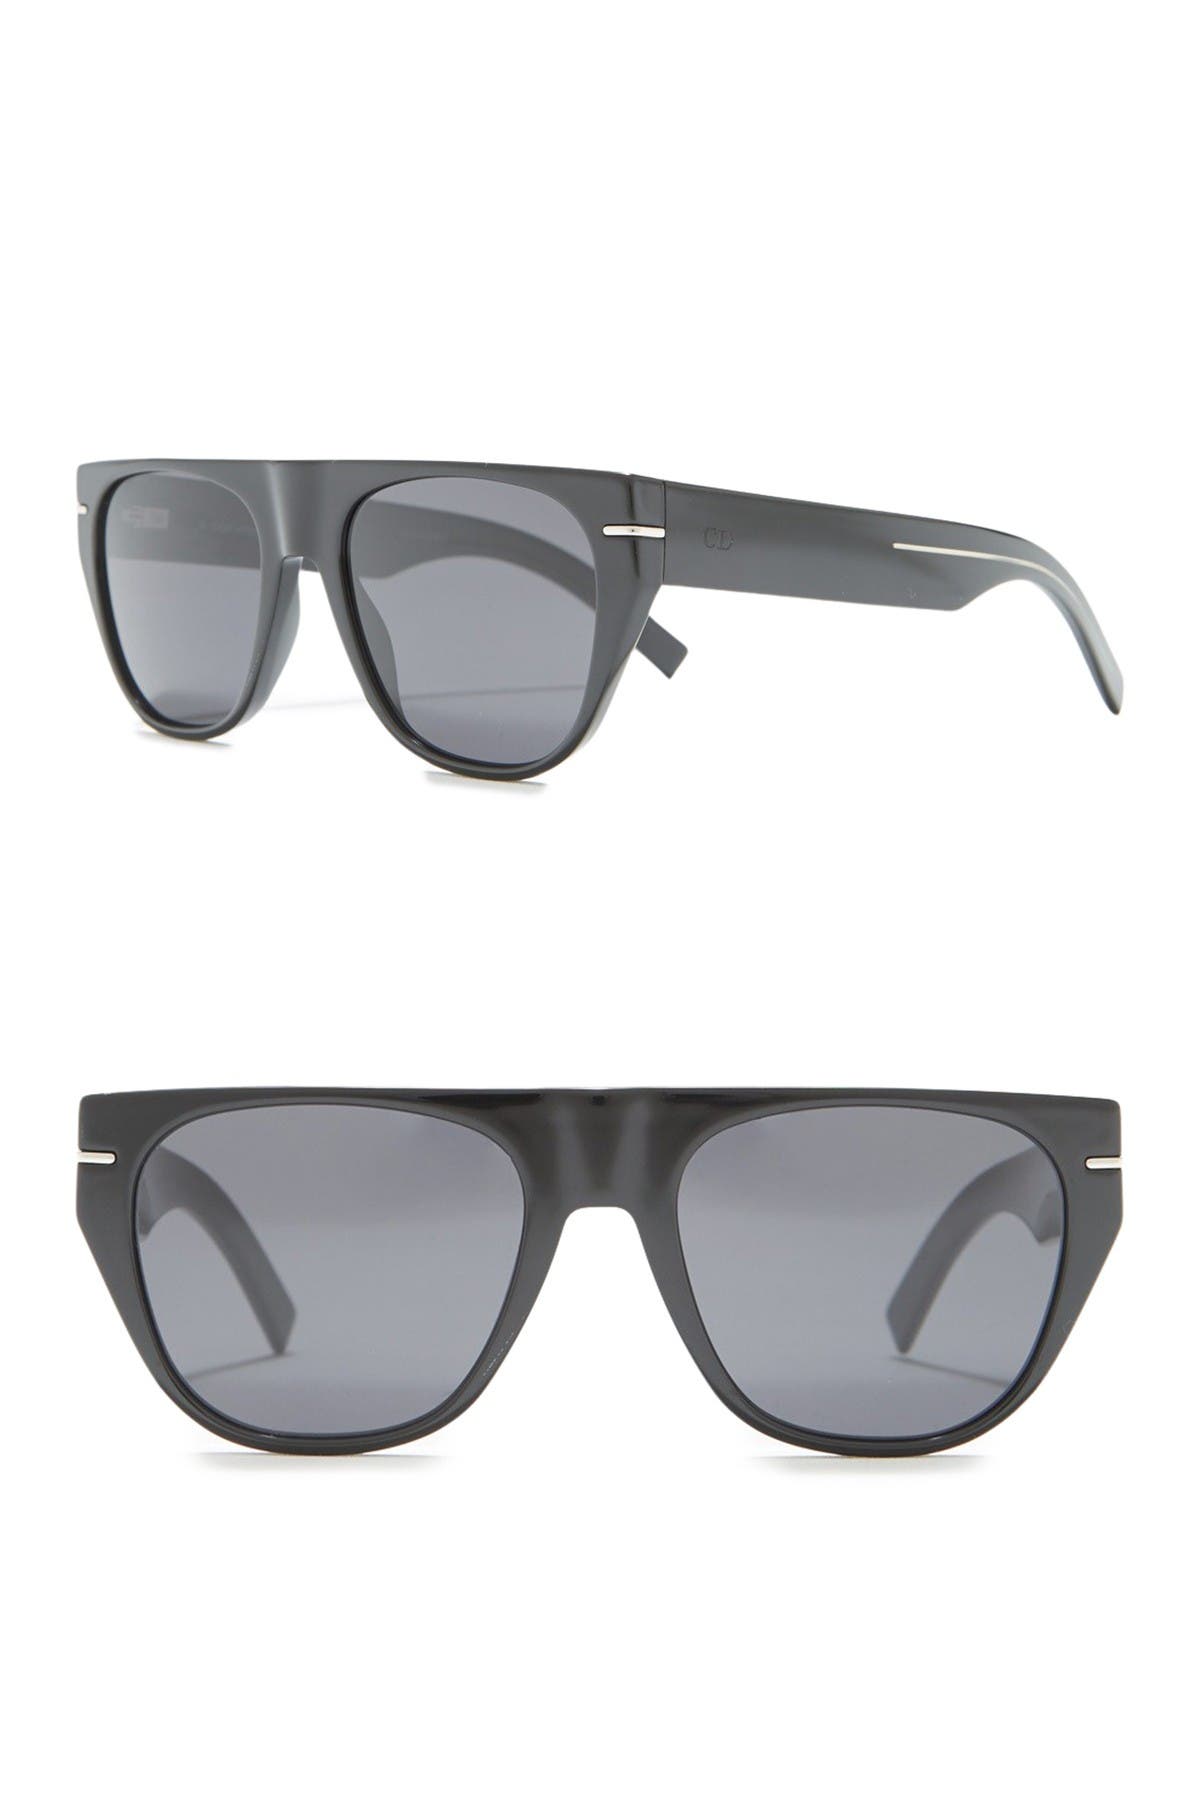 dior flat top sunglasses